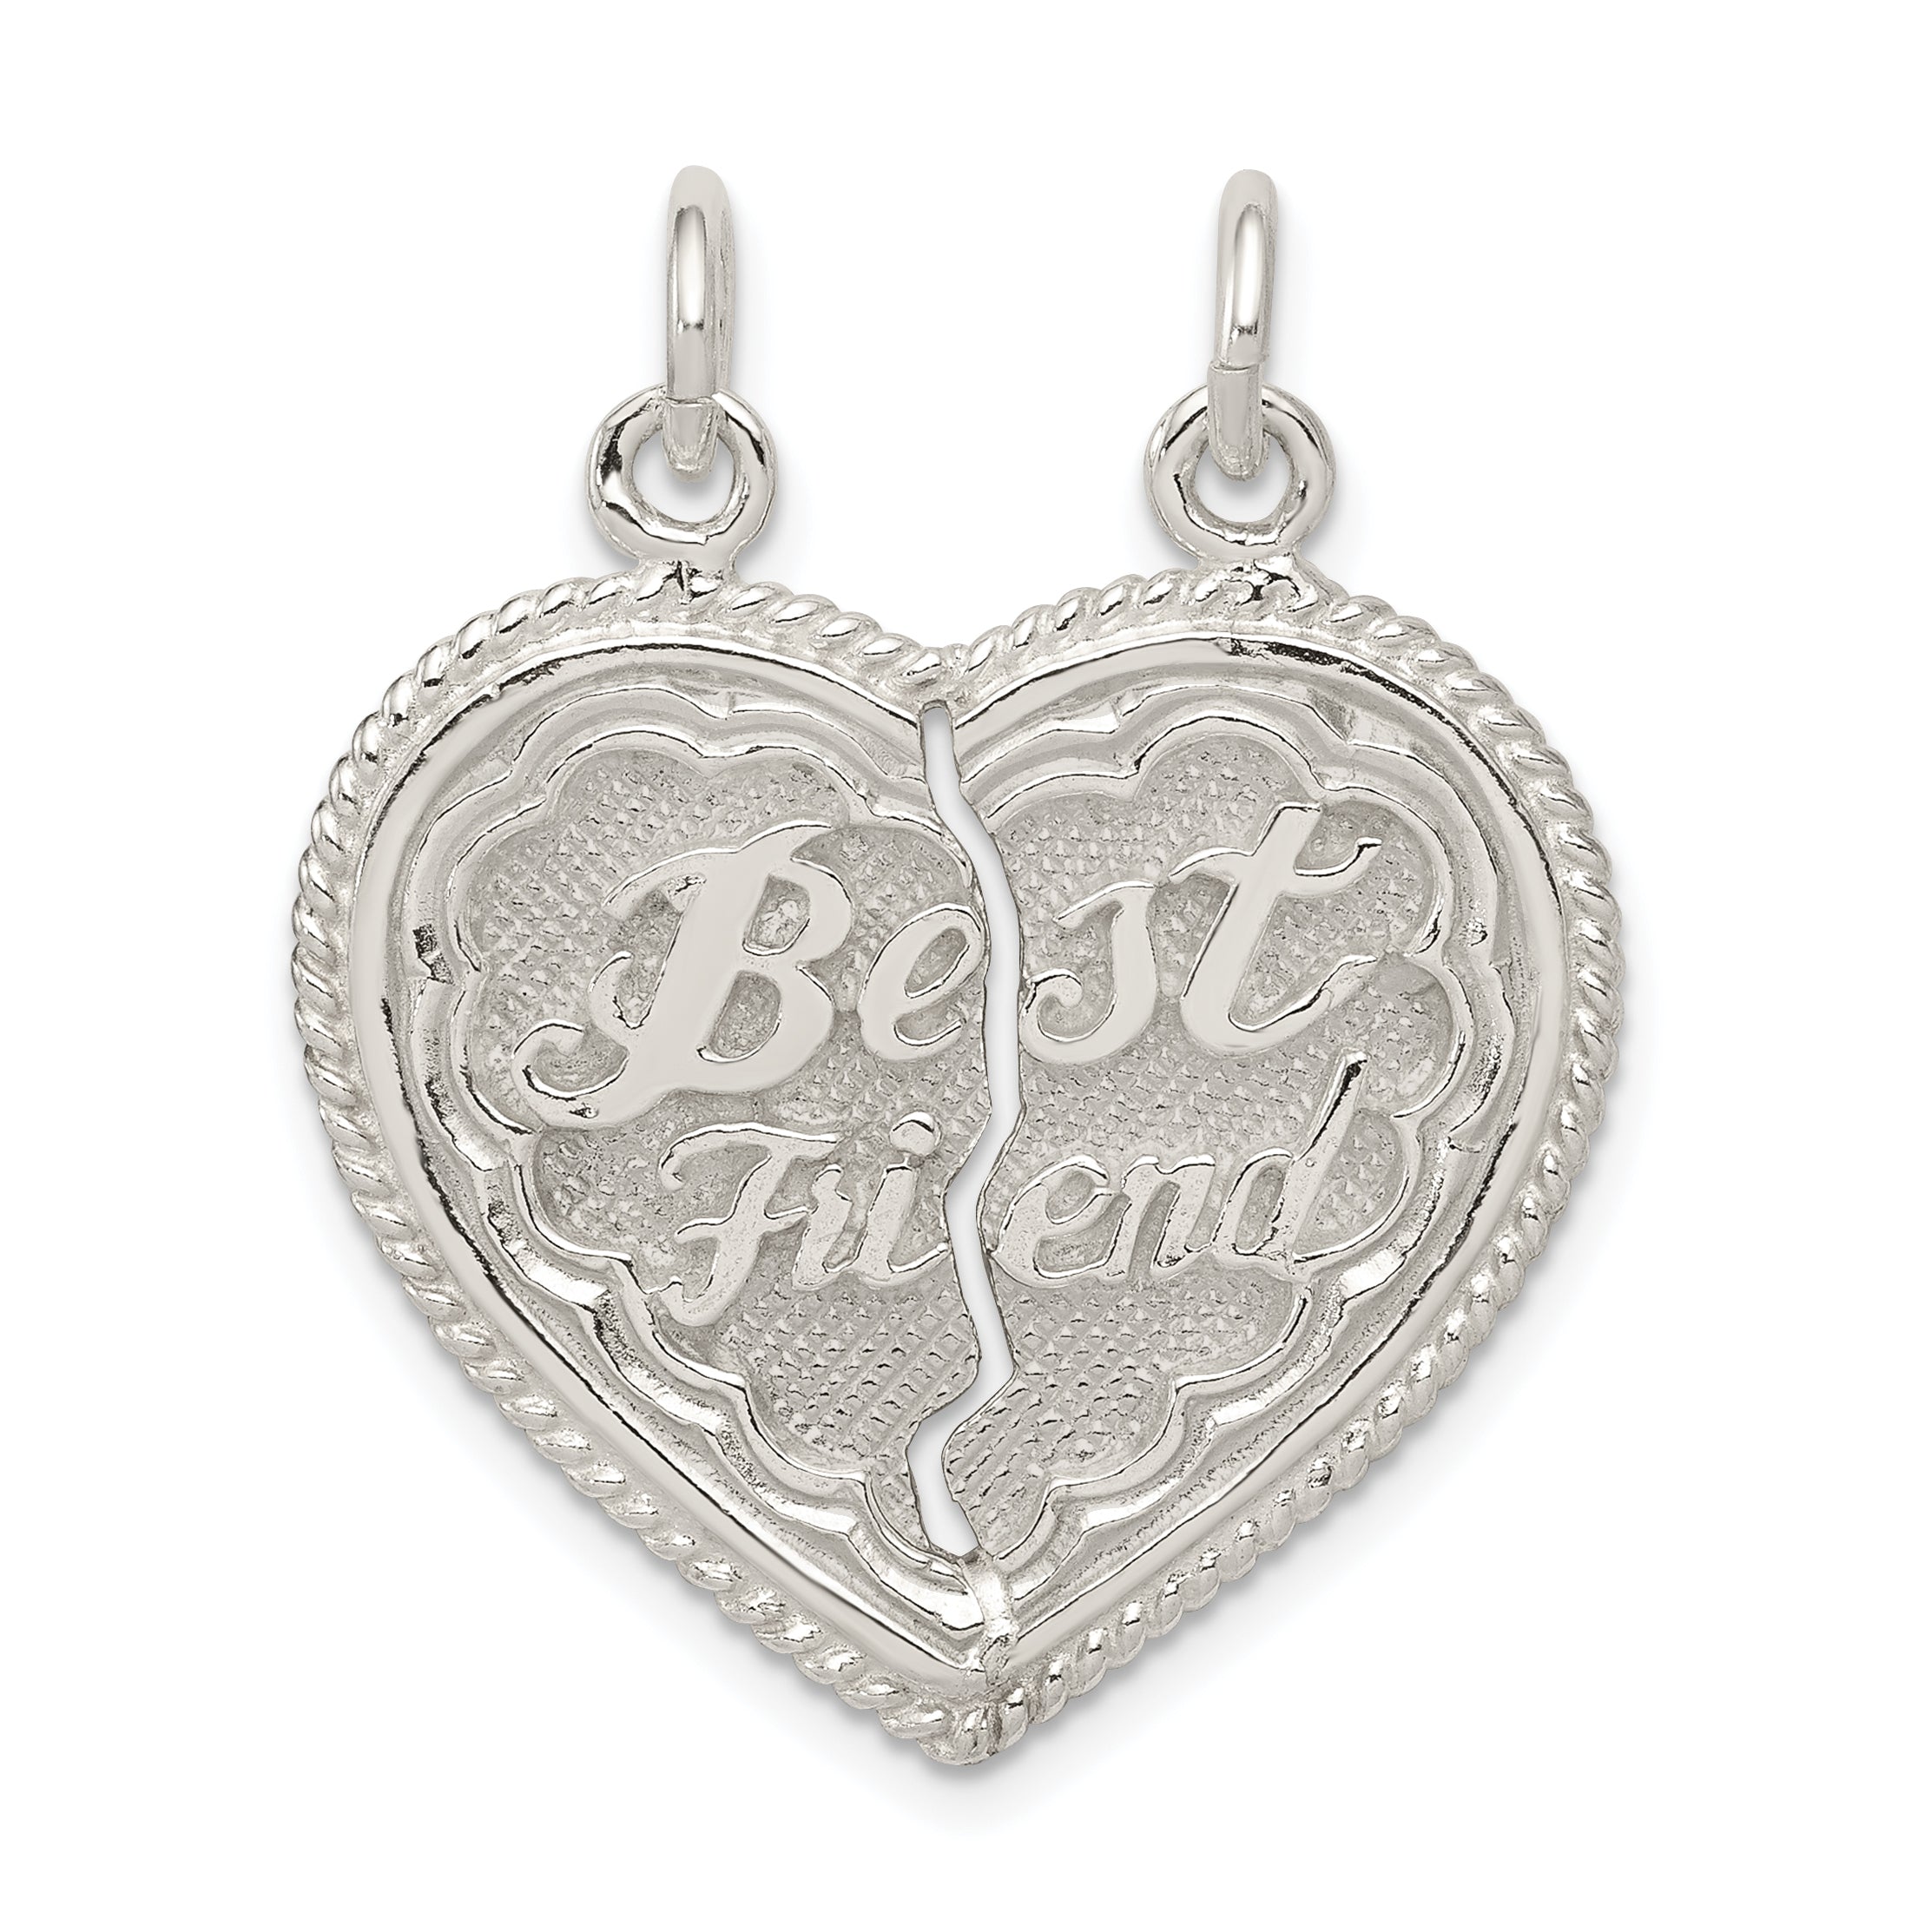 Sterling Silver Best Friend 2-piece break apart Heart Charm